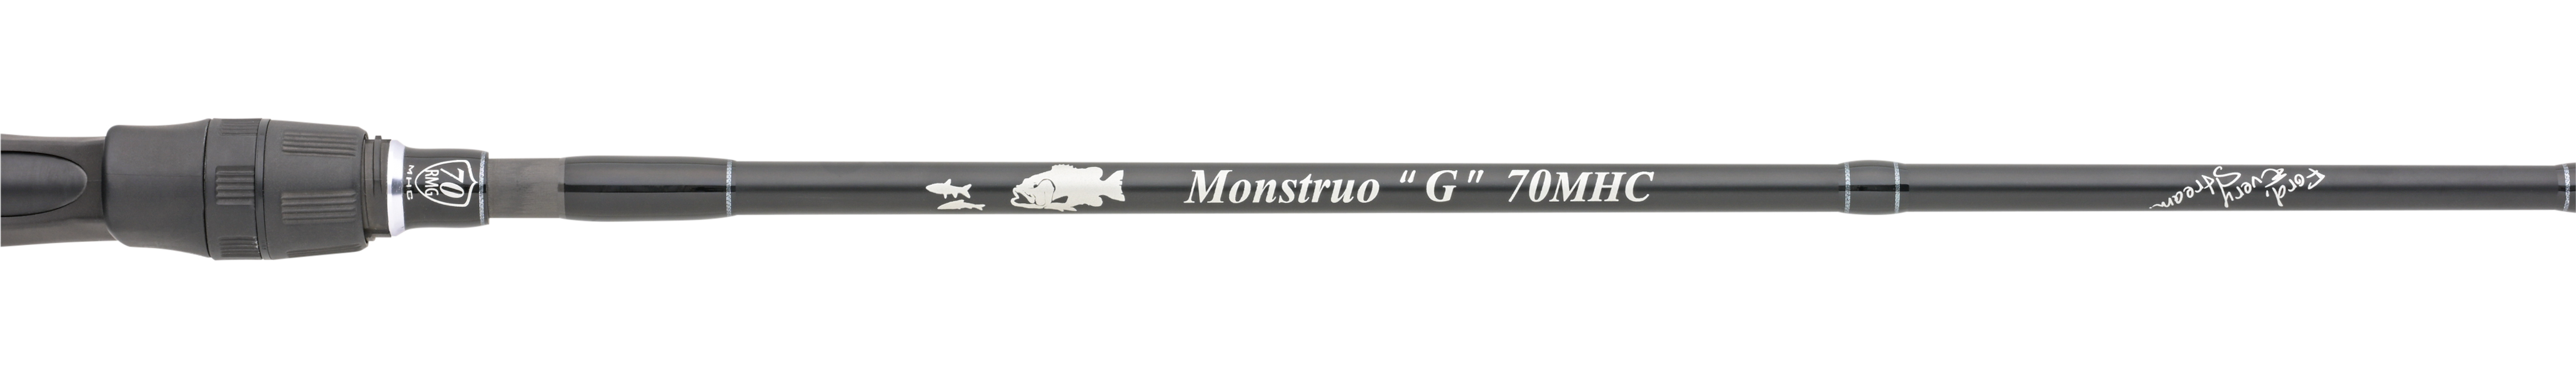 Monstruo”G” 70MHC | グリップ